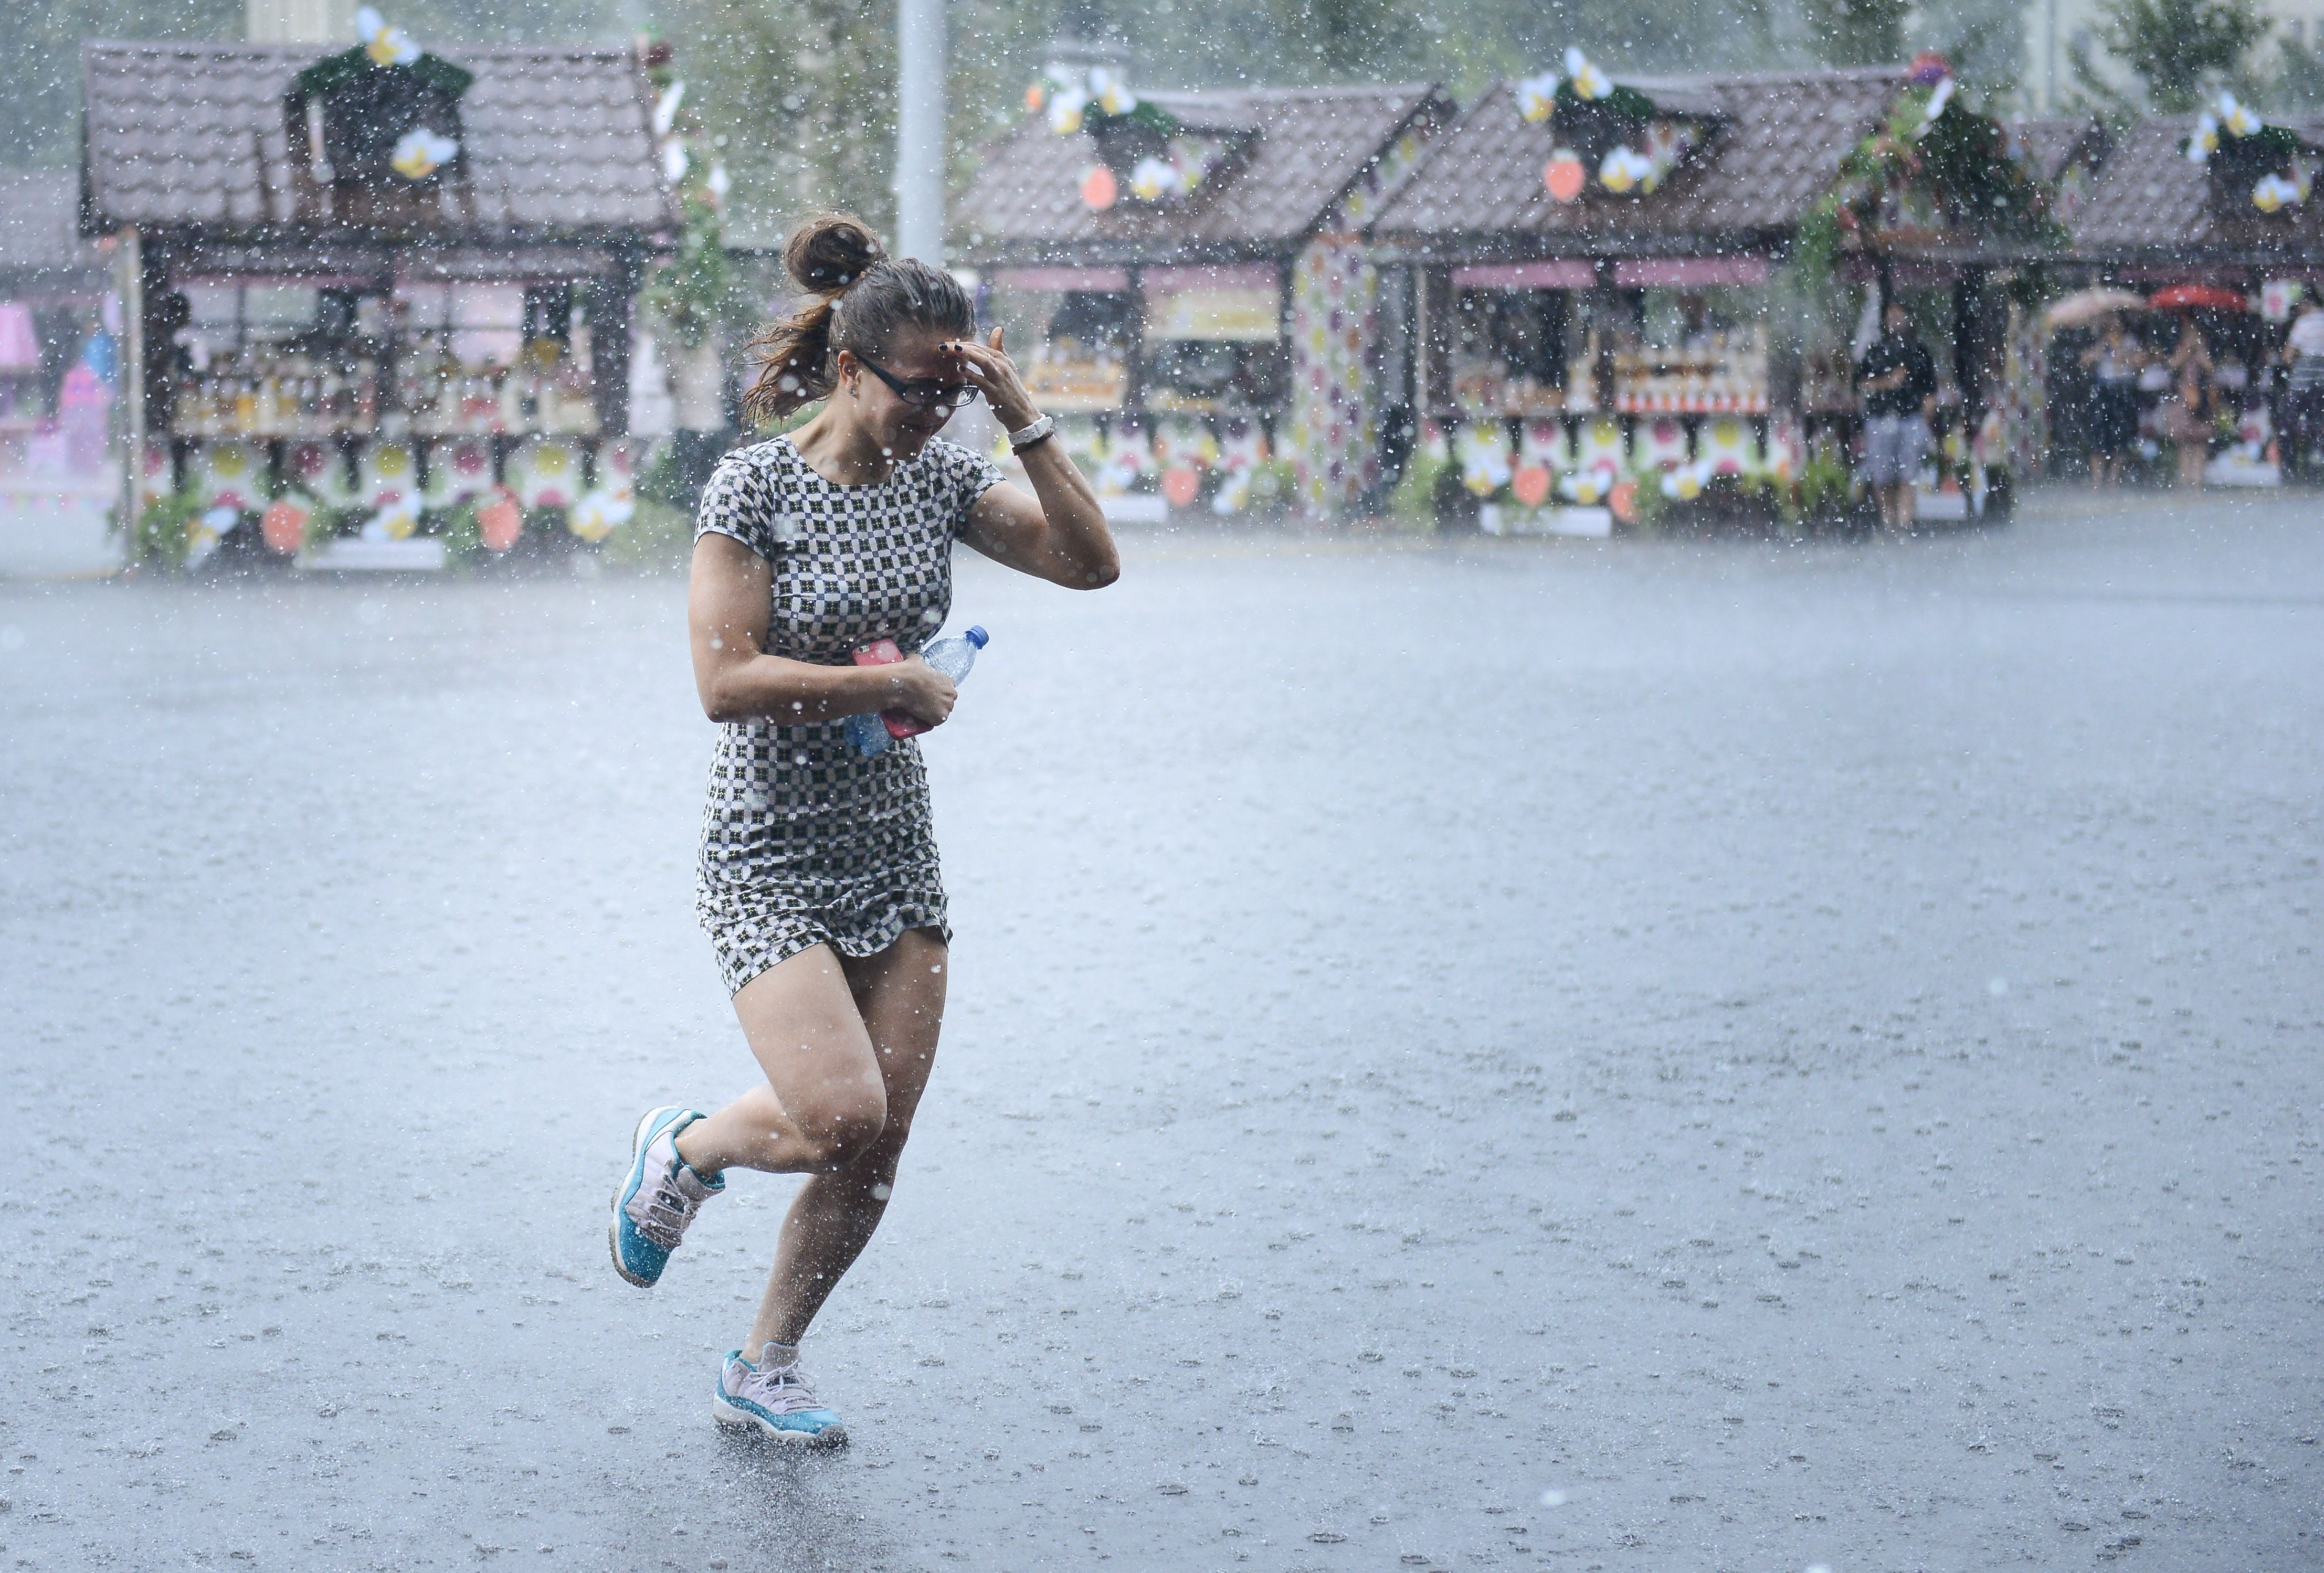 Более половины июньской нормы дождя выпадет в Москве за три дня